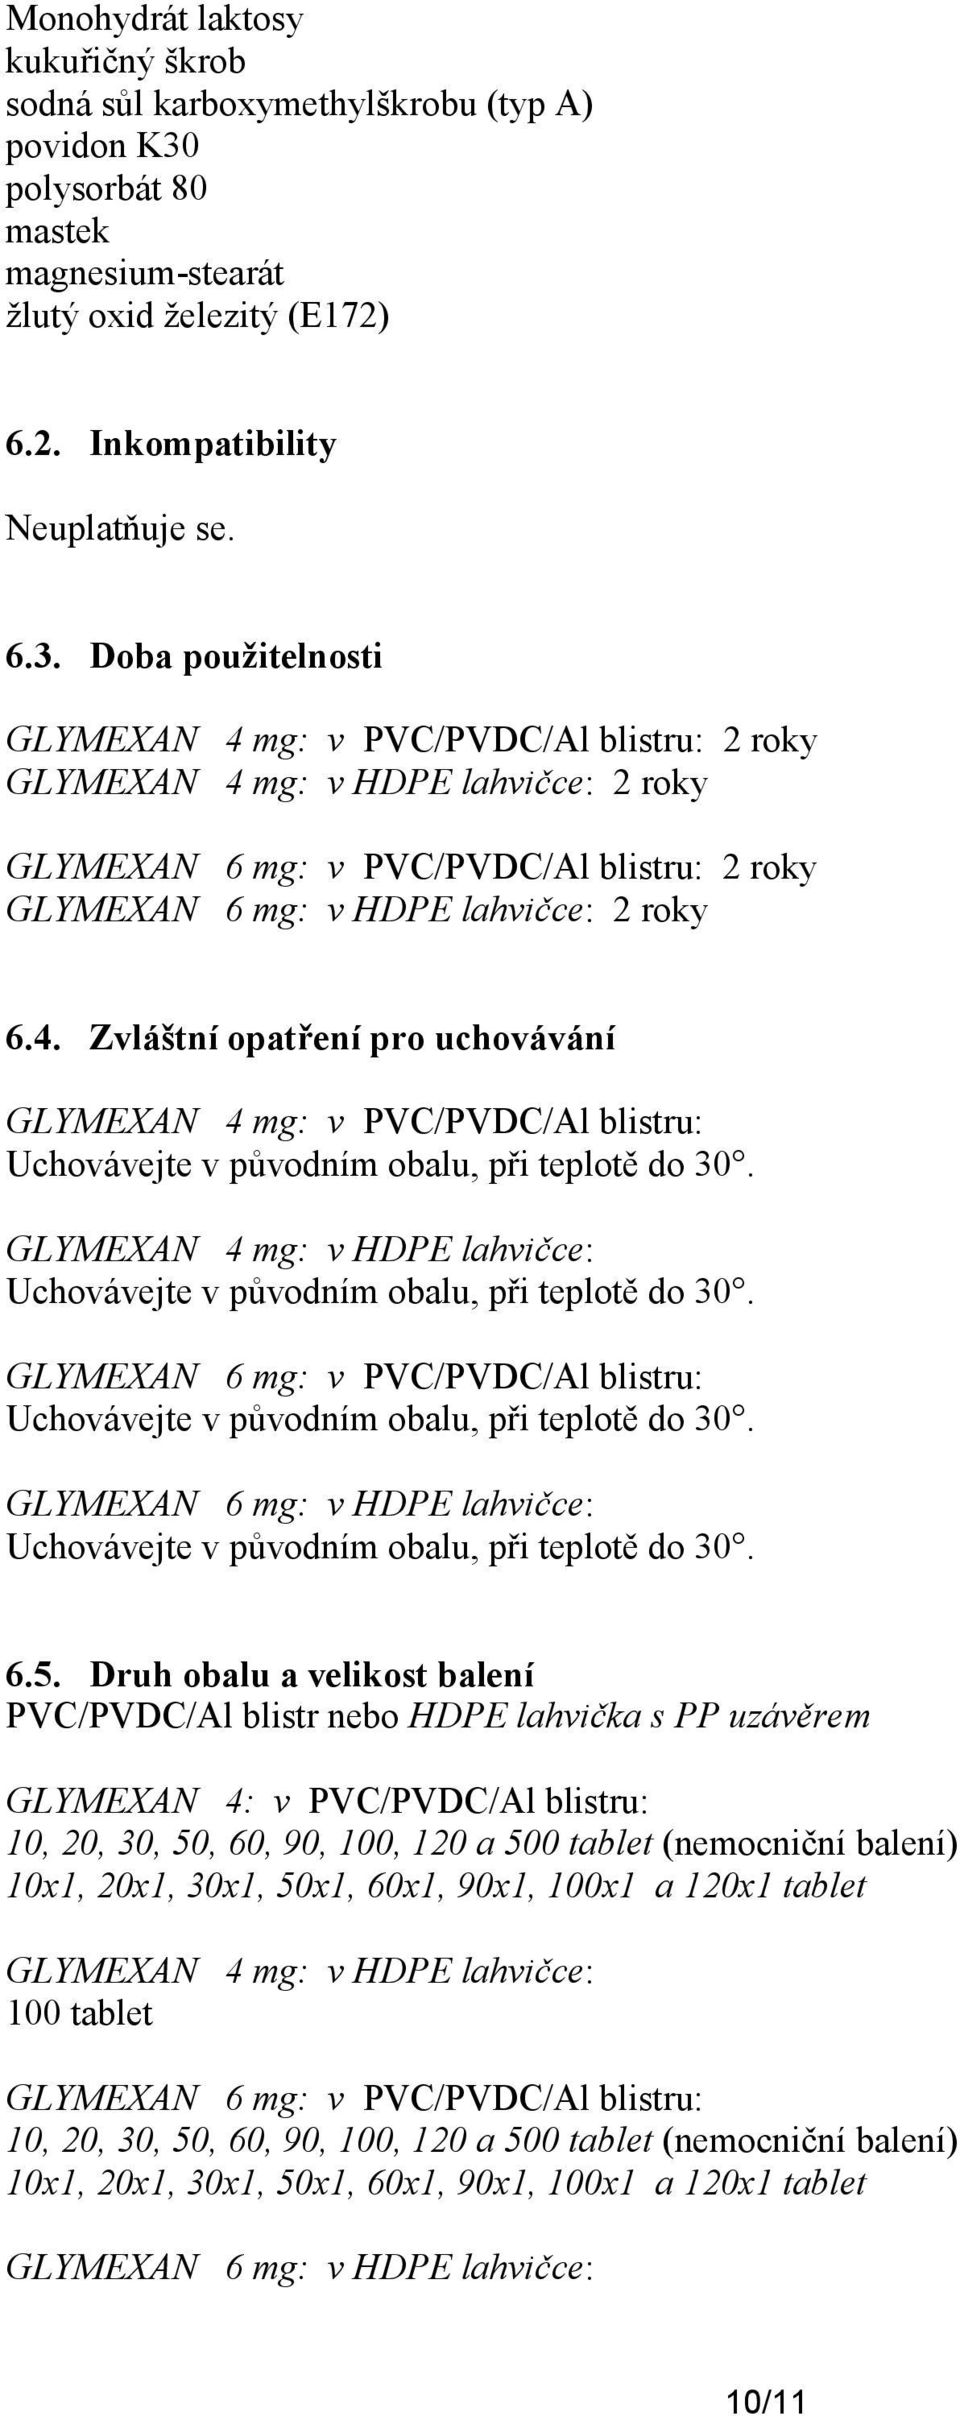 Doba použitelnosti GLYMEXAN 4 mg: v PVC/PVDC/Al blistru: 2 roky GLYMEXAN 4 mg: v HDPE lahvičce: 2 roky GLYMEXAN 6 mg: v PVC/PVDC/Al blistru: 2 roky GLYMEXAN 6 mg: v HDPE lahvičce: 2 roky 6.4. Zvláštní opatření pro uchovávání GLYMEXAN 4 mg: v PVC/PVDC/Al blistru: Uchovávejte v původním obalu, při teplotě do 30.